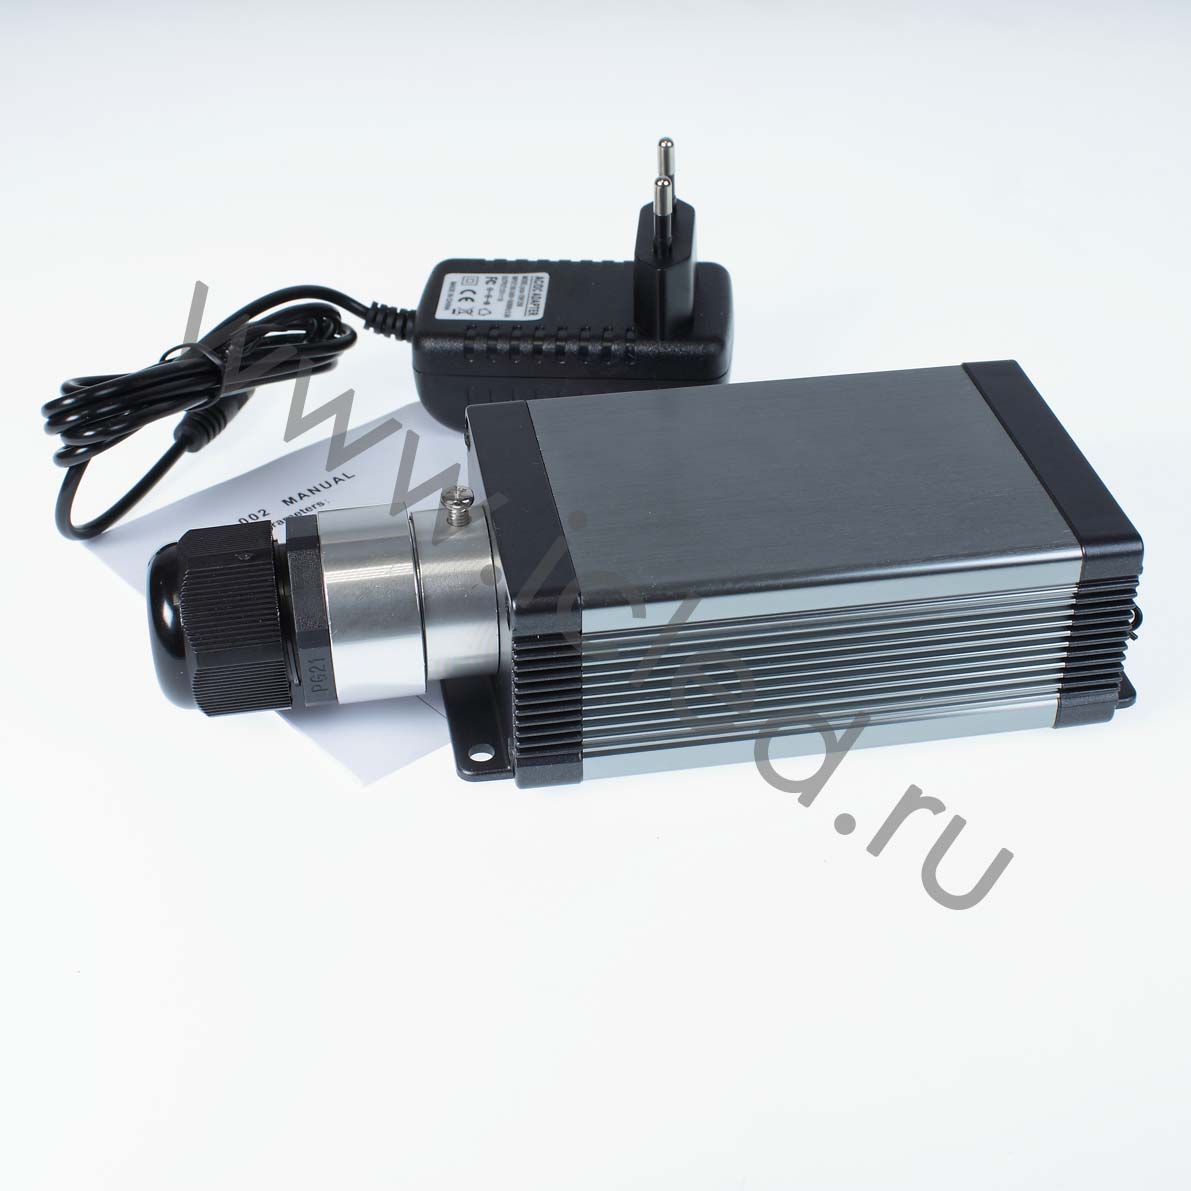 Источник света CXGX-C-002 OP6 для оптоволокна